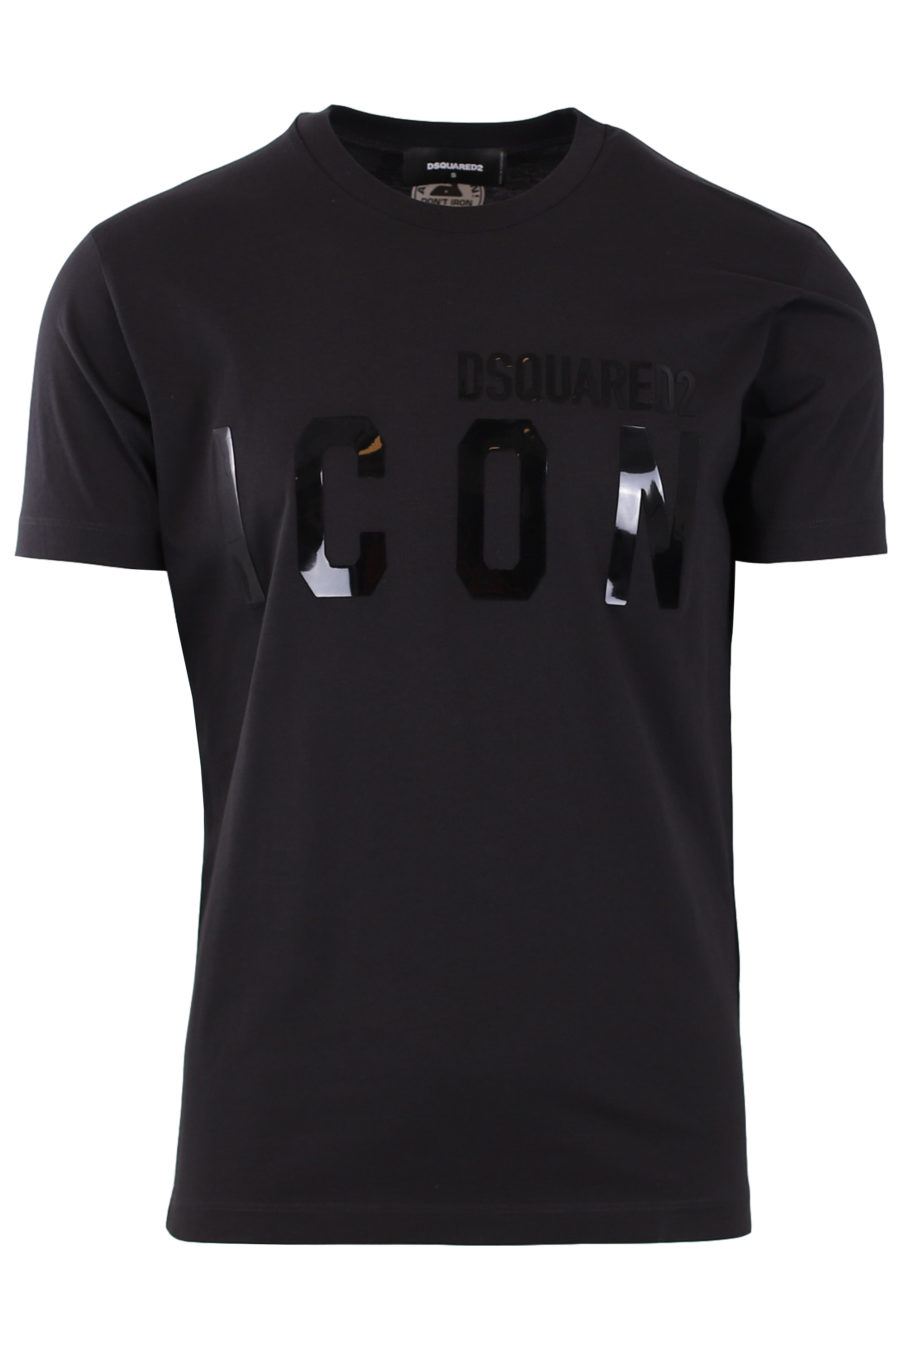 Camiseta negra con logotipo "Icon"engomado - 03ee487f9467a8b305f07c4376d40da4b1d8f982